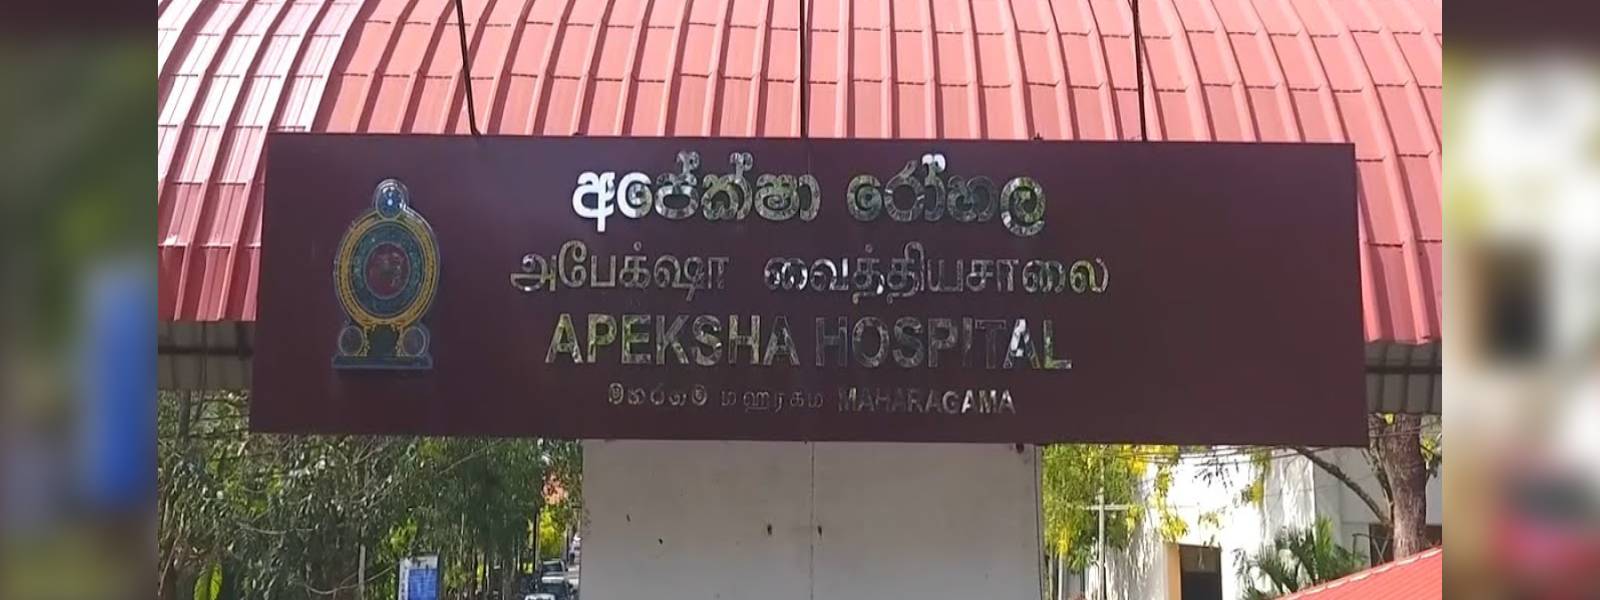 Govt. to transport cancer patients to Apeksha Hospital